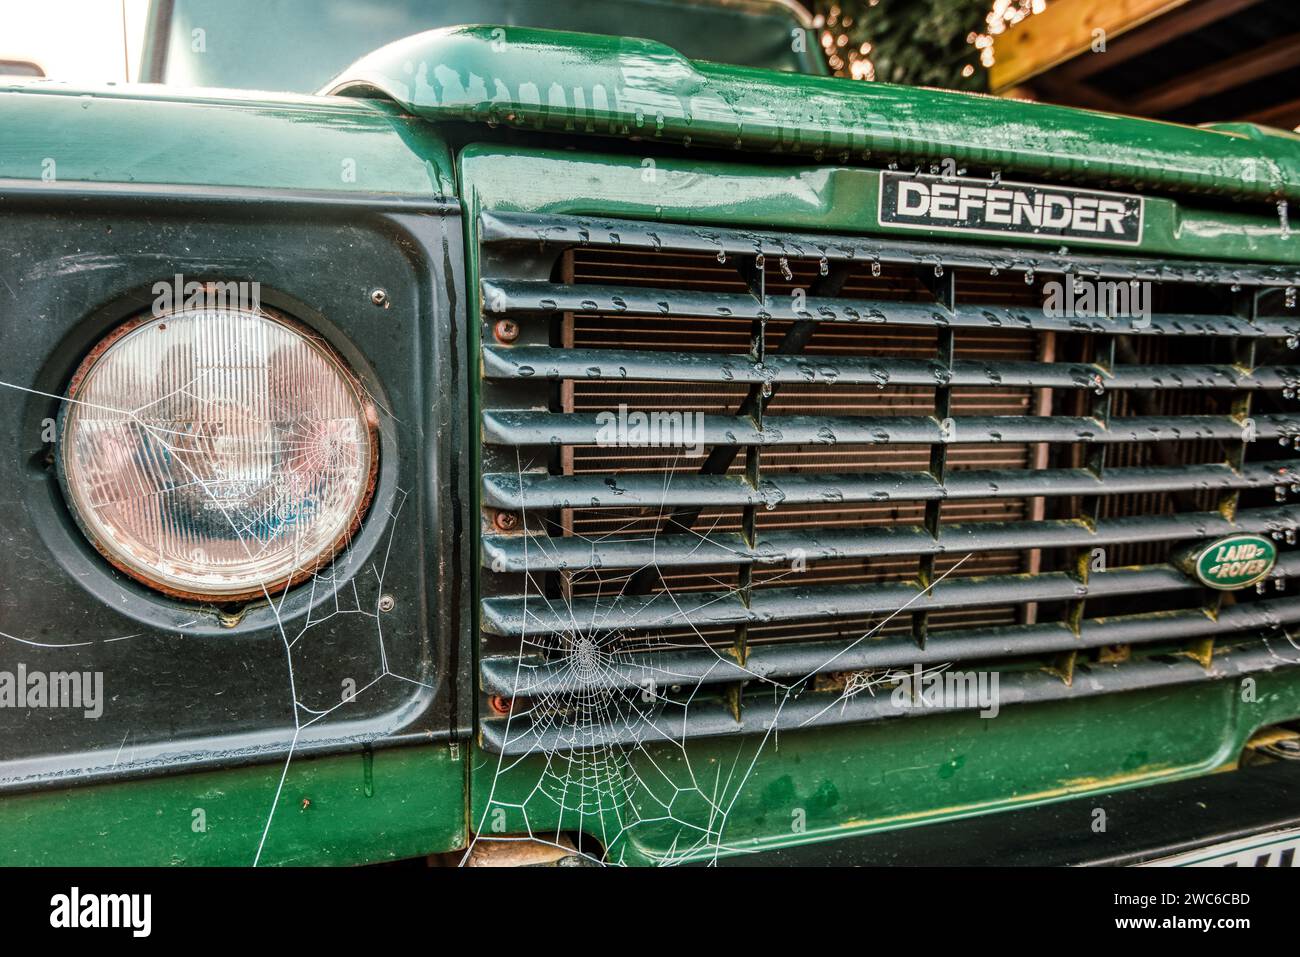 Toiles d'araignée dewy sur la grille avant d'un vieux Land Rover Defender, Hampshire, Royaume-Uni Banque D'Images